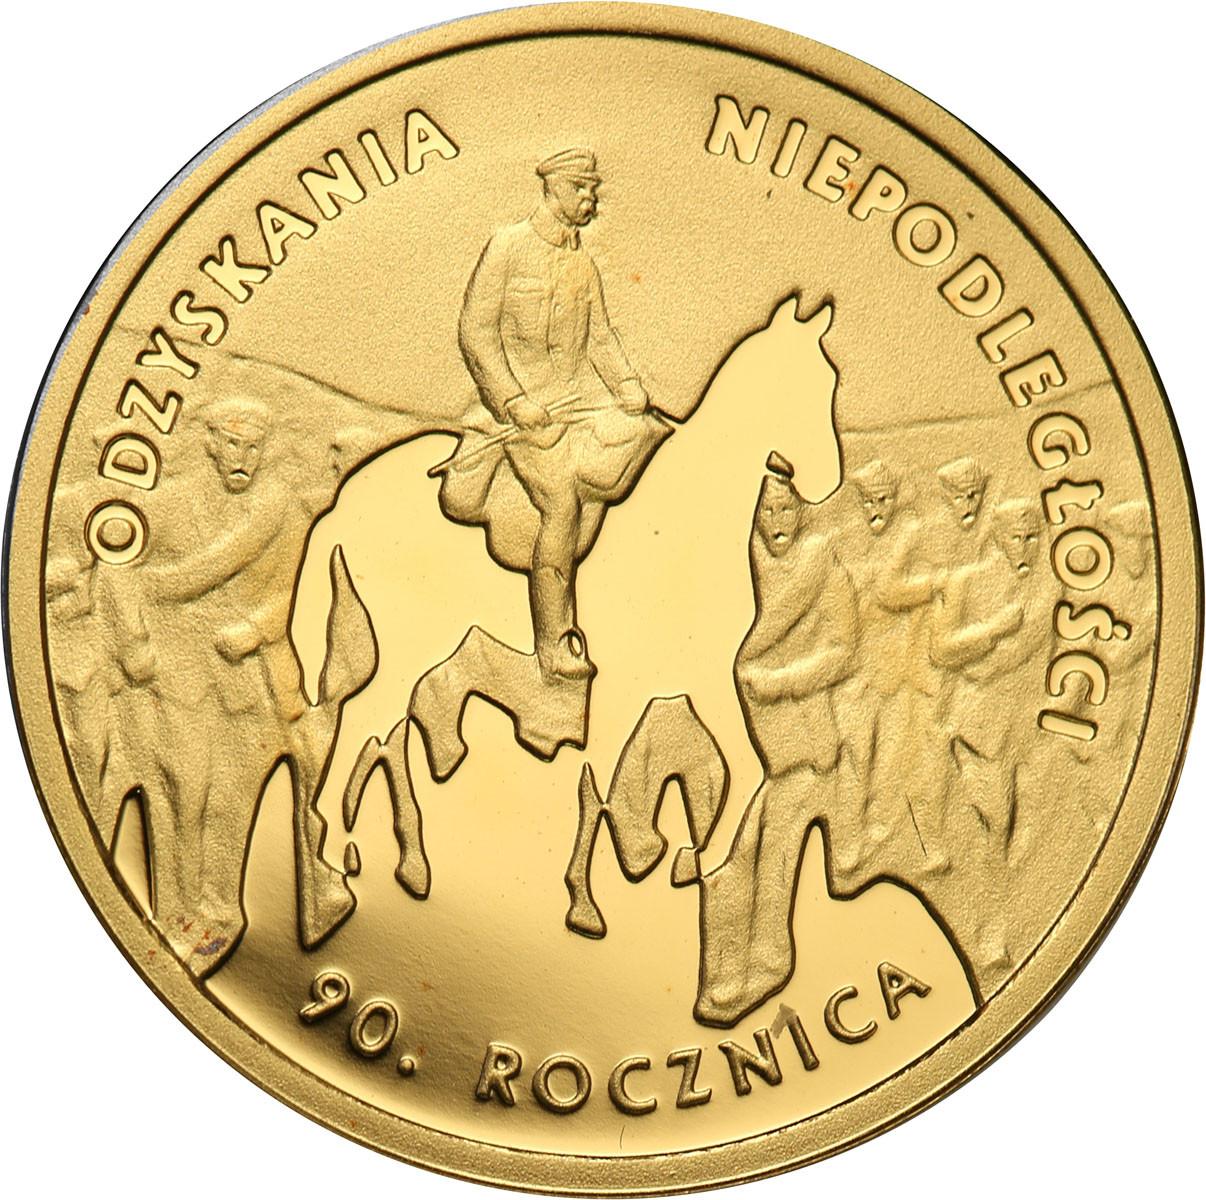 50 złotych 2008 Rocznica Odzyskania Niepodległości Piłsudski (1/10 uncji złota)